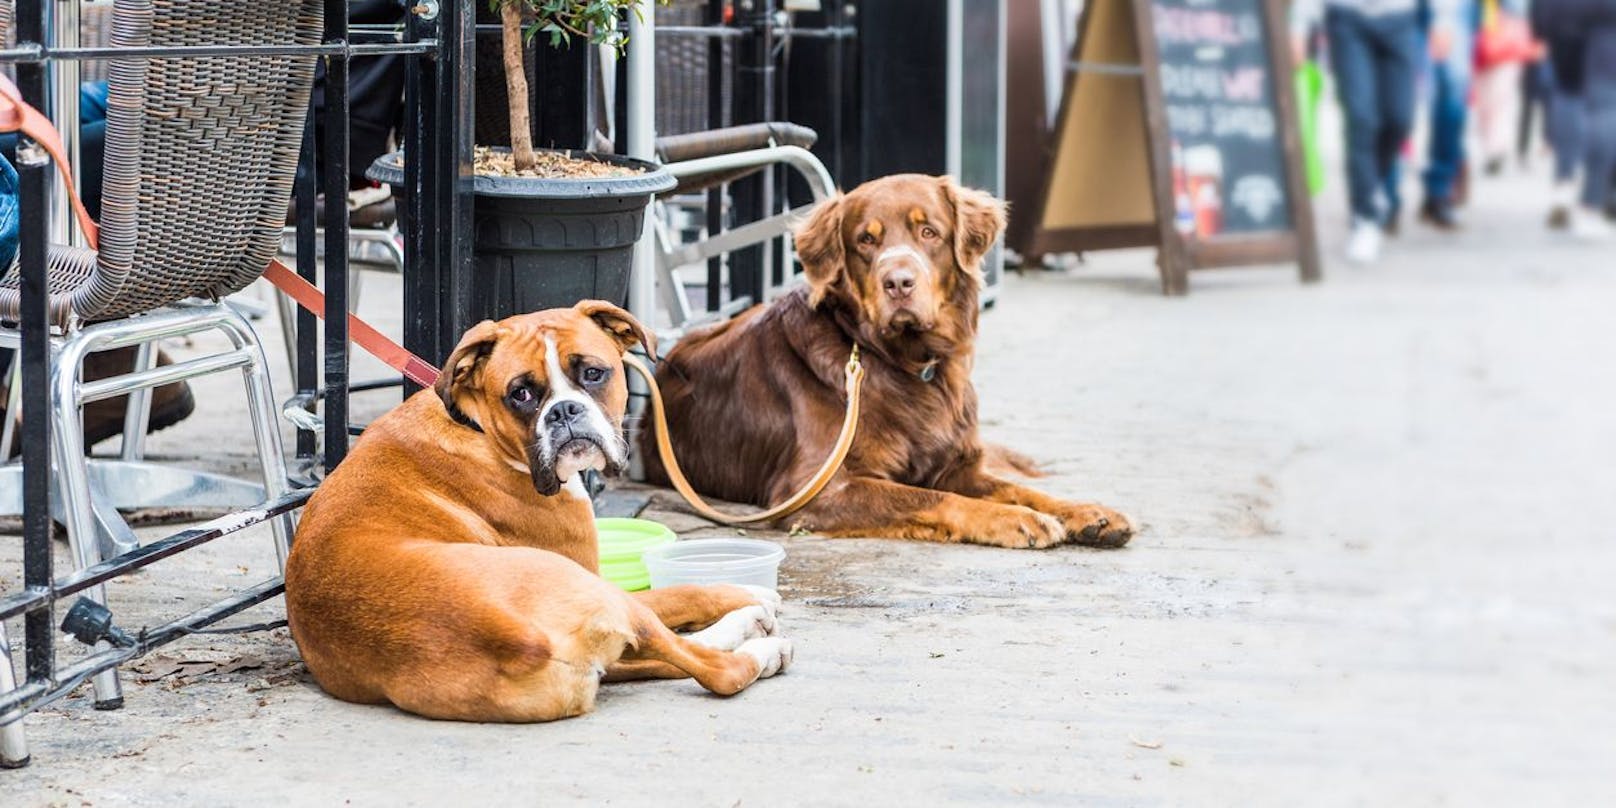 Ein Basler Restaurant verweigerte an einem heißen Sommertag Ende Juli einer Frau Wasser für ihre Hunde. Die Antwort war für die Hundebesitzerin nicht nachvollziehbar.